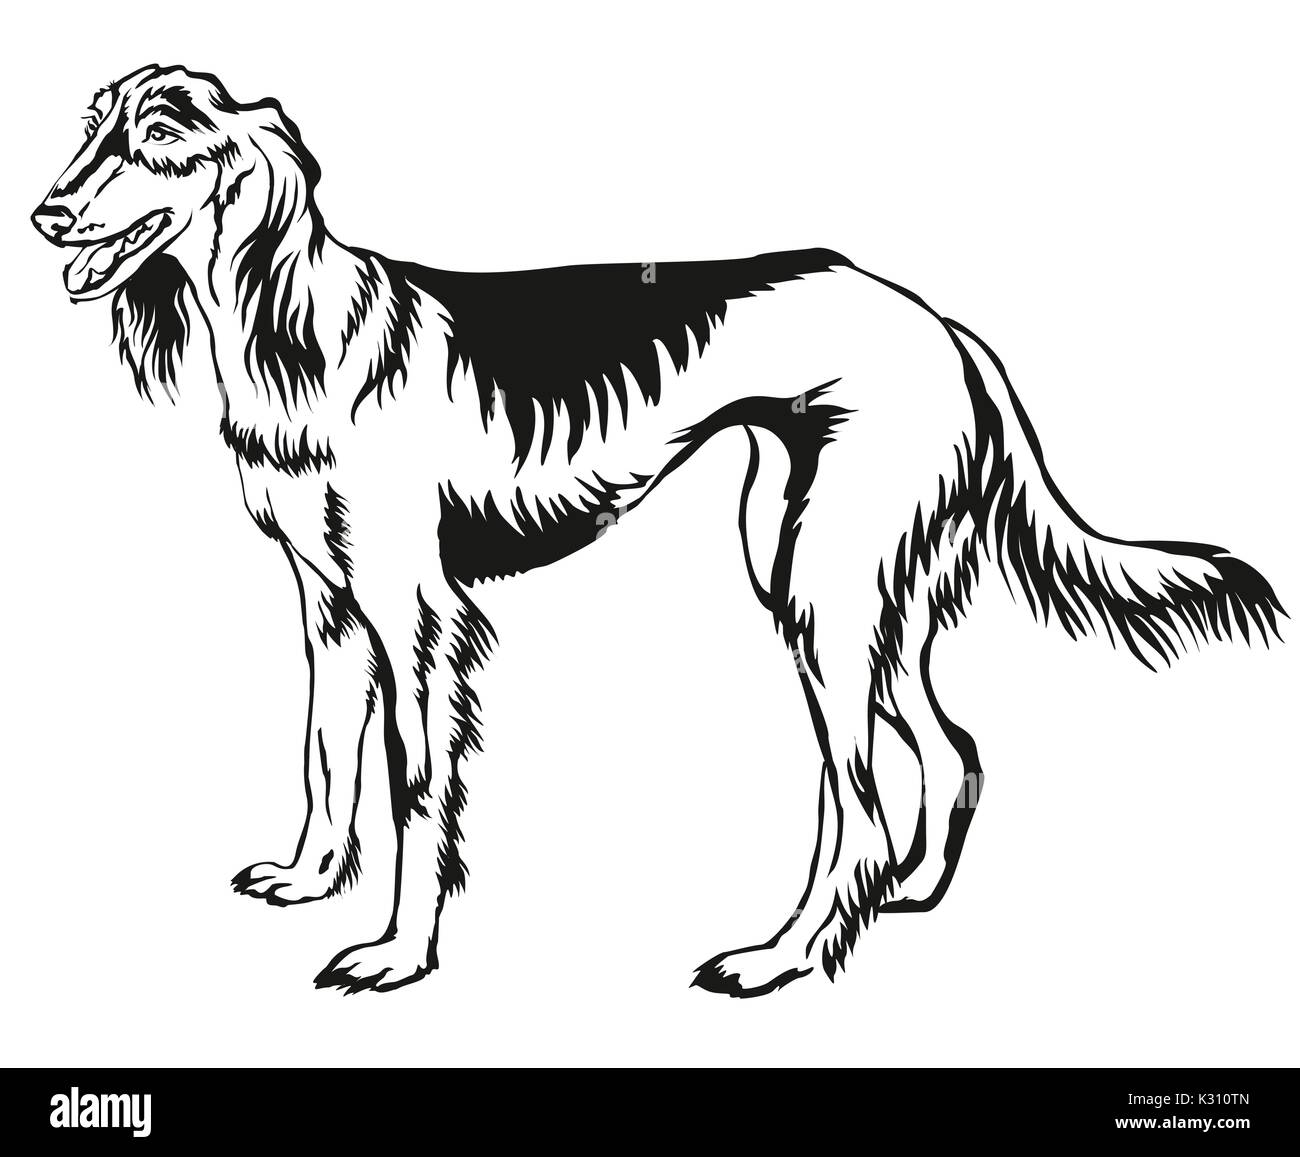 Dekorative Portrait von ständigen im Profil persischer Windhund (Saluki), Vektor isoliert Abbildung in schwarz auf weißem Hintergrund Stock Vektor